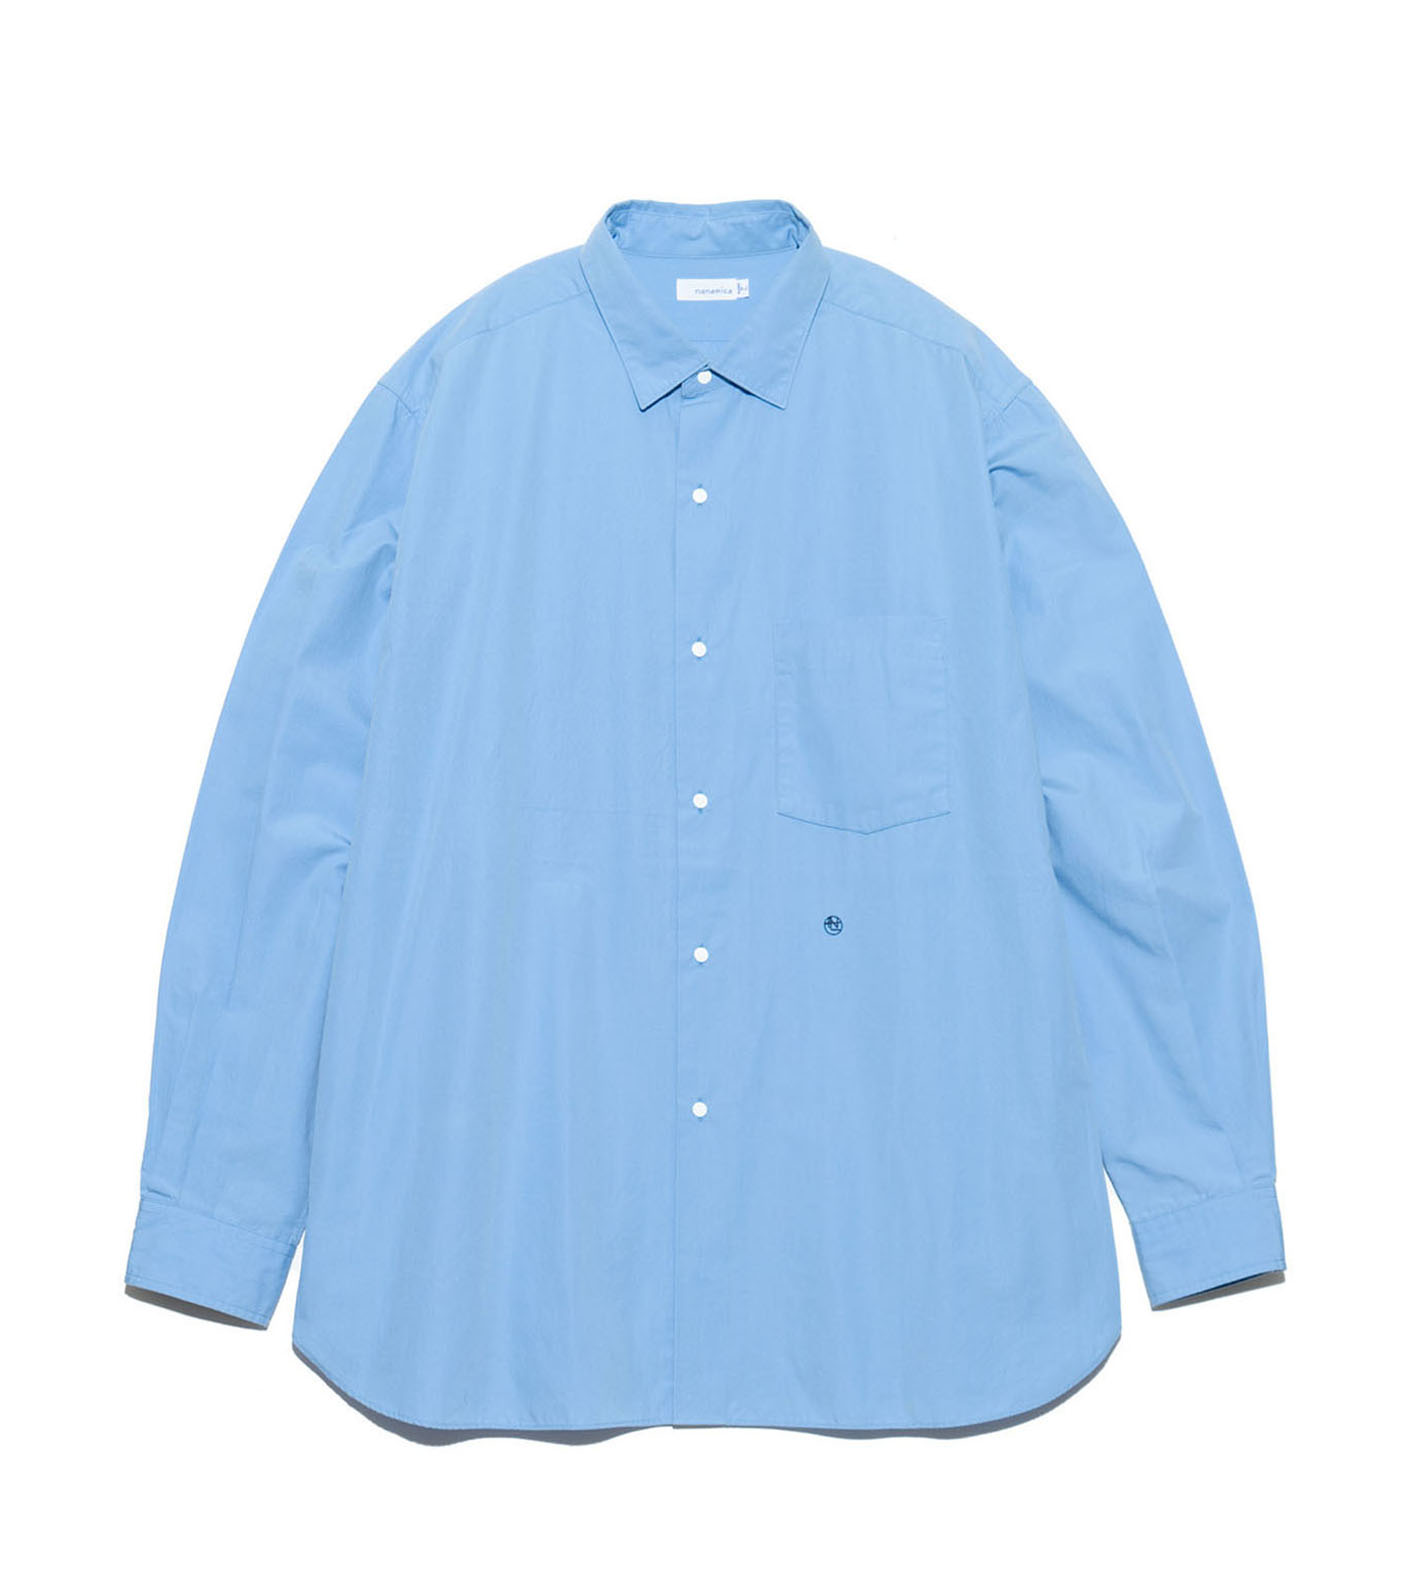 7,560円nanamica Regular Collar Wind Shirt  ナナミカ